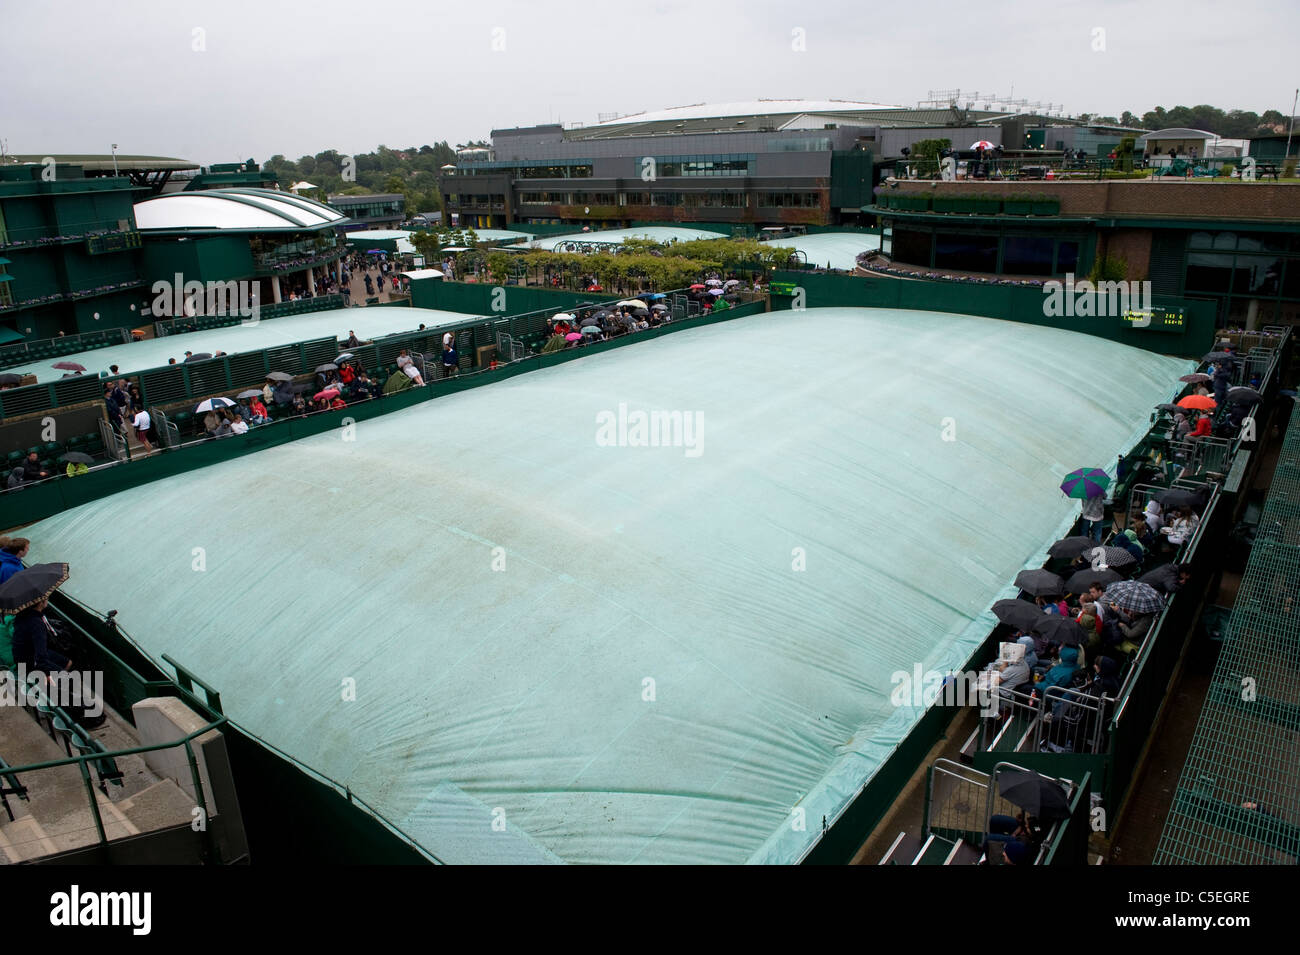 Une cour couverte 18 sous la pluie au cours de l'édition 2011 des Championnats de tennis de Wimbledon Banque D'Images